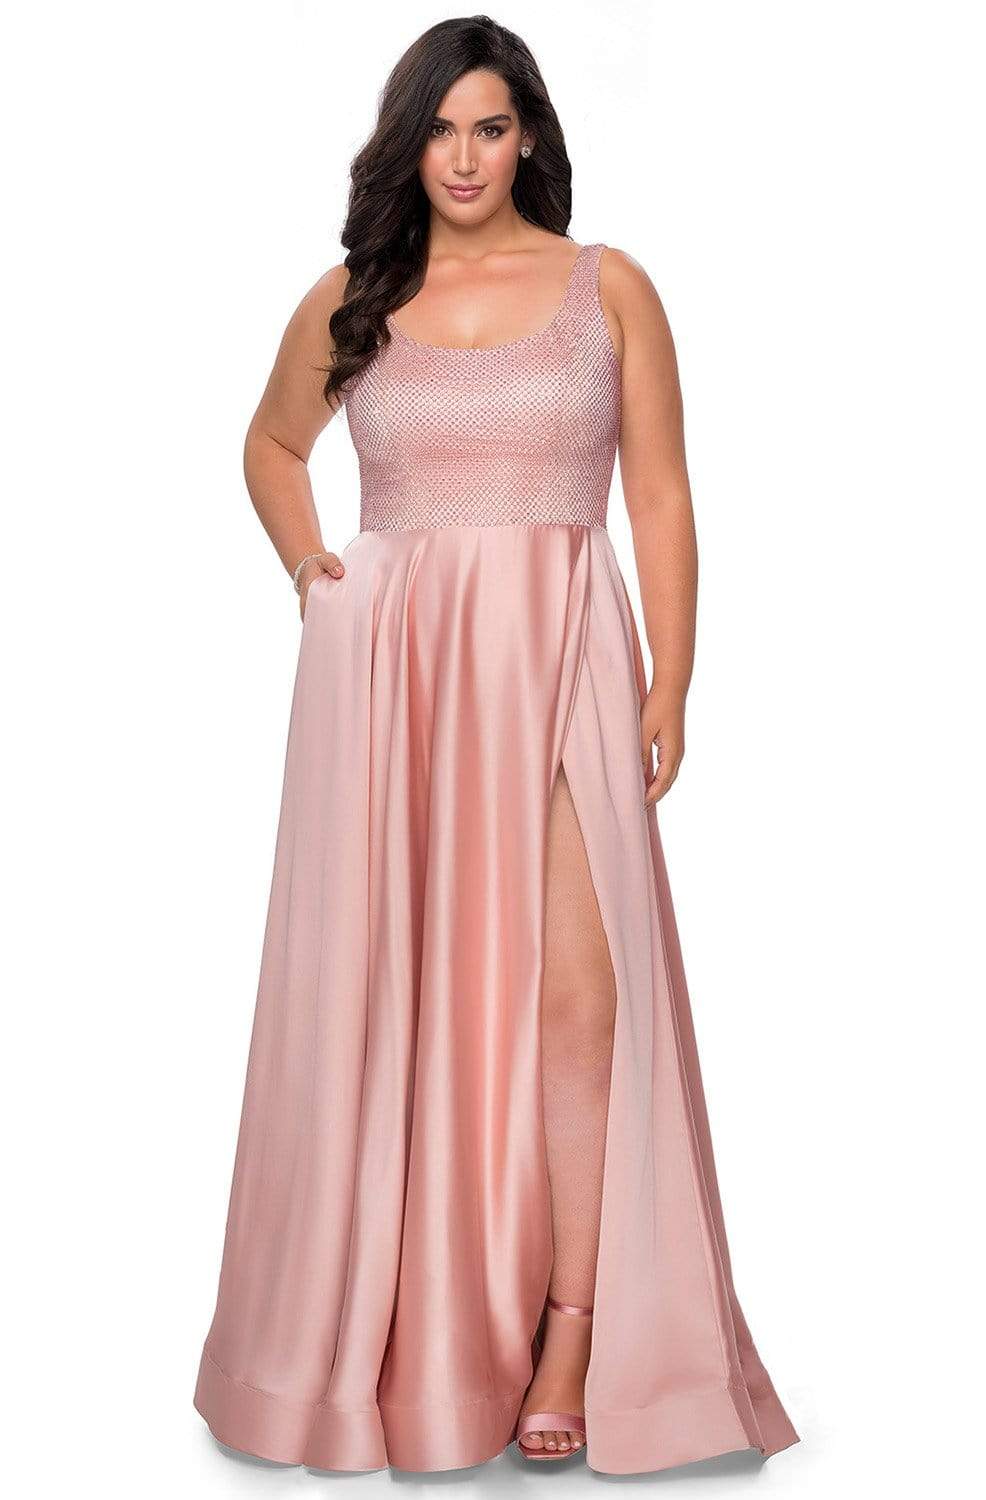 La Femme - 28879 Scoop A-Line Evening Gown Evening Dresses 12W / Blush